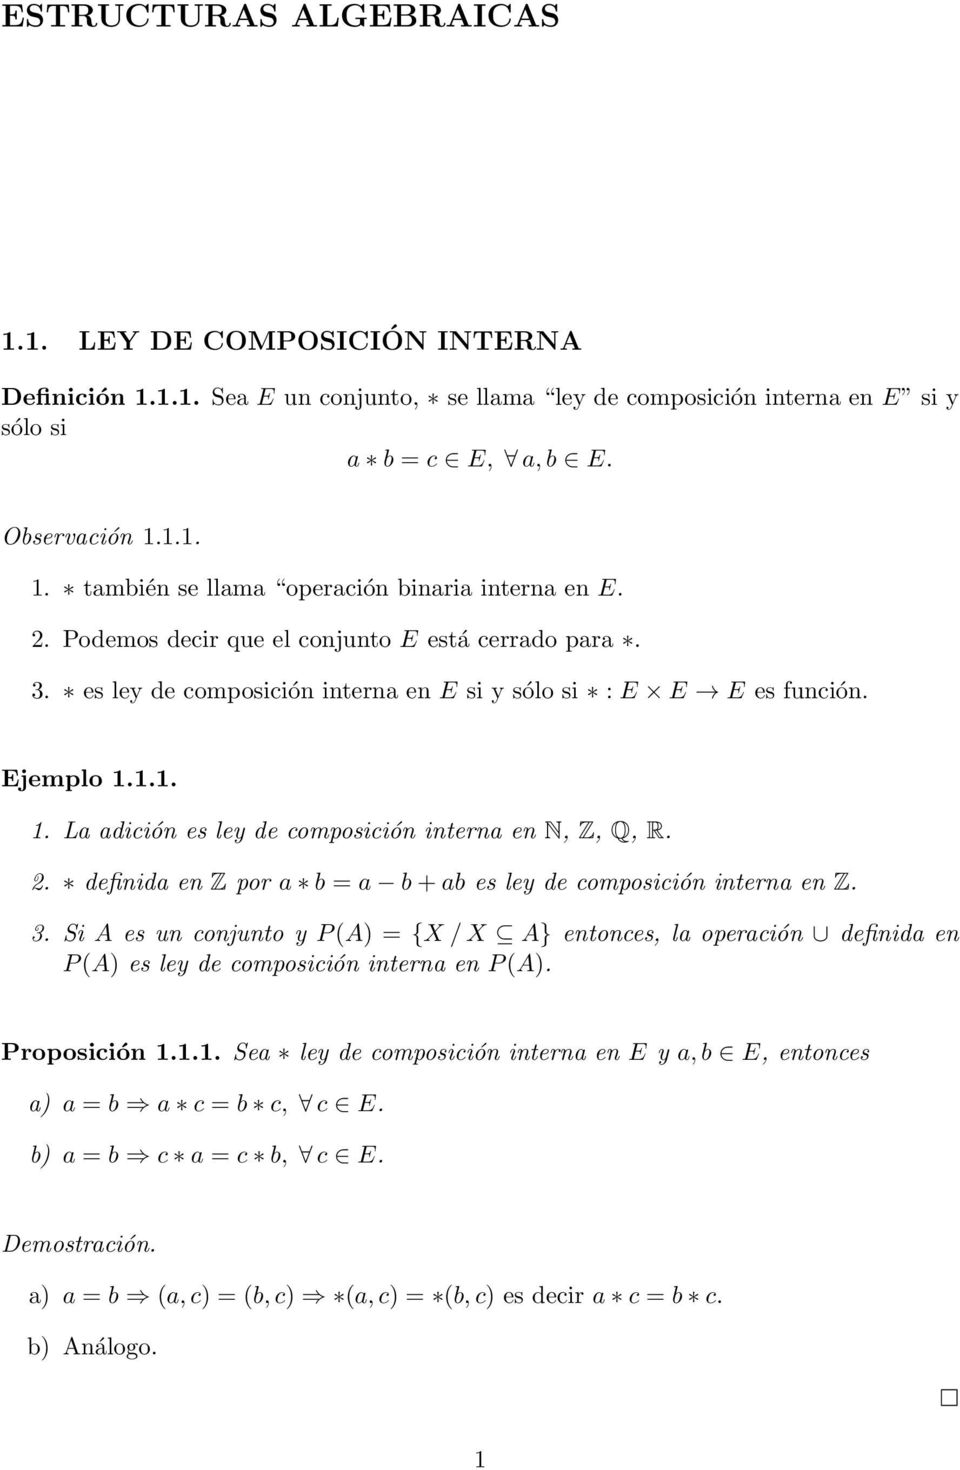 2. definida en Z por a b = a b + ab es ley de composición interna en Z. 3. Si A es un conjunto y P (A) = {X / X A} entonces, la operación definida en P (A) es ley de composición interna en P (A).